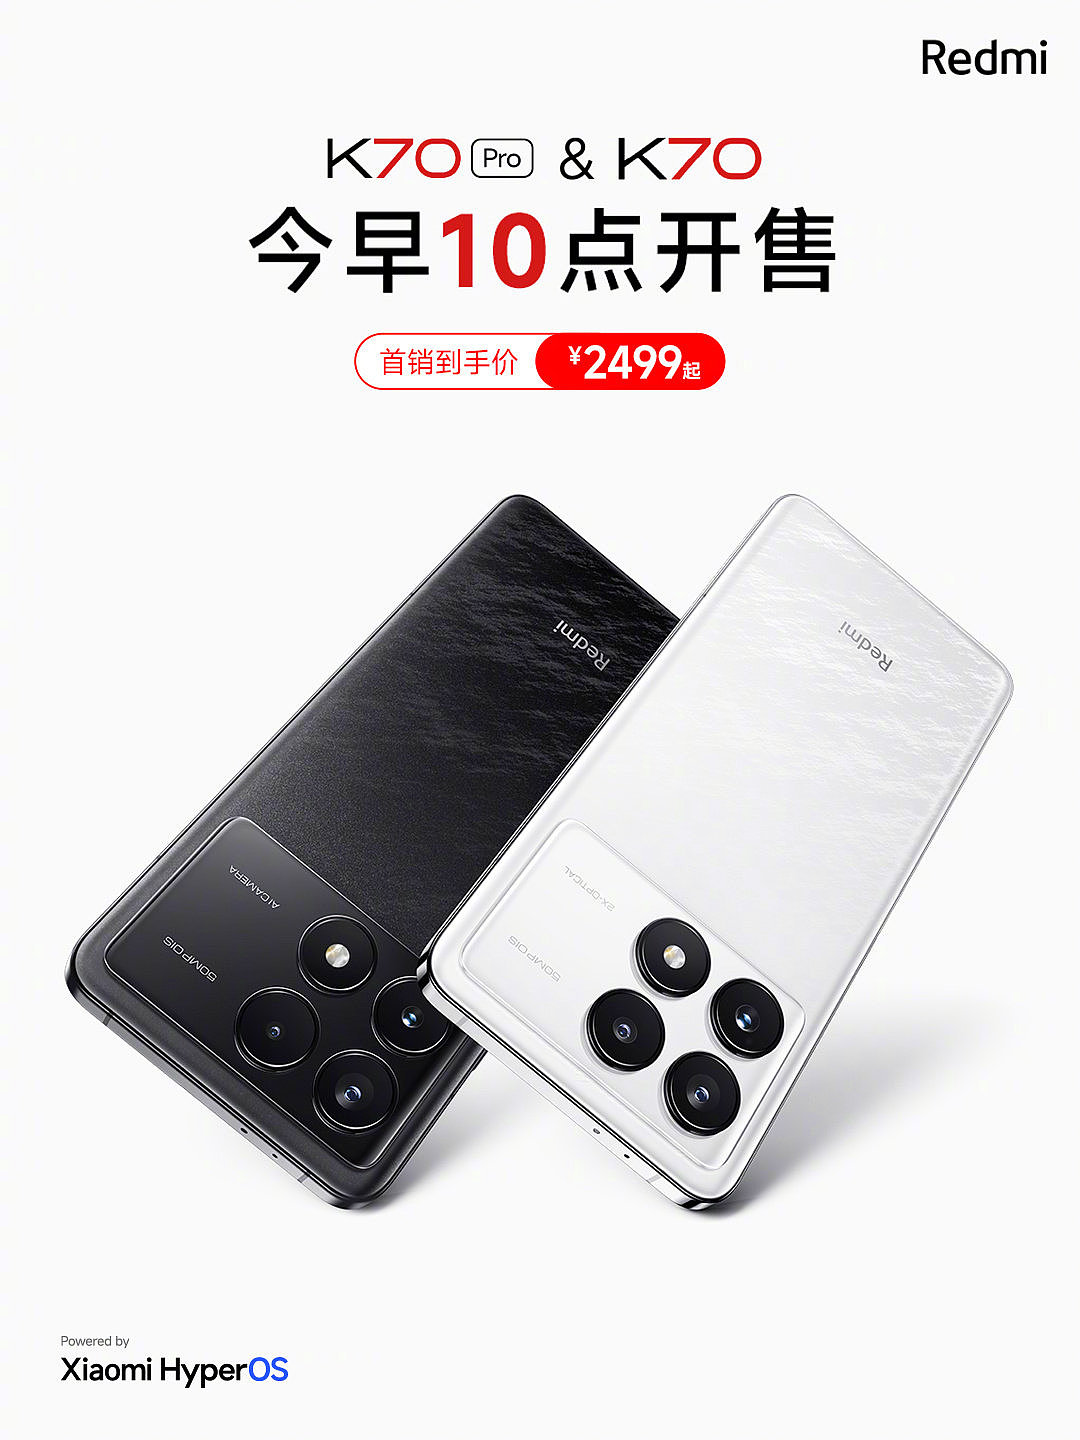 小米 Redmi K70 系列手机首销 5 分钟销量突破 60 万台，相比 K60 翻倍增长 - 2